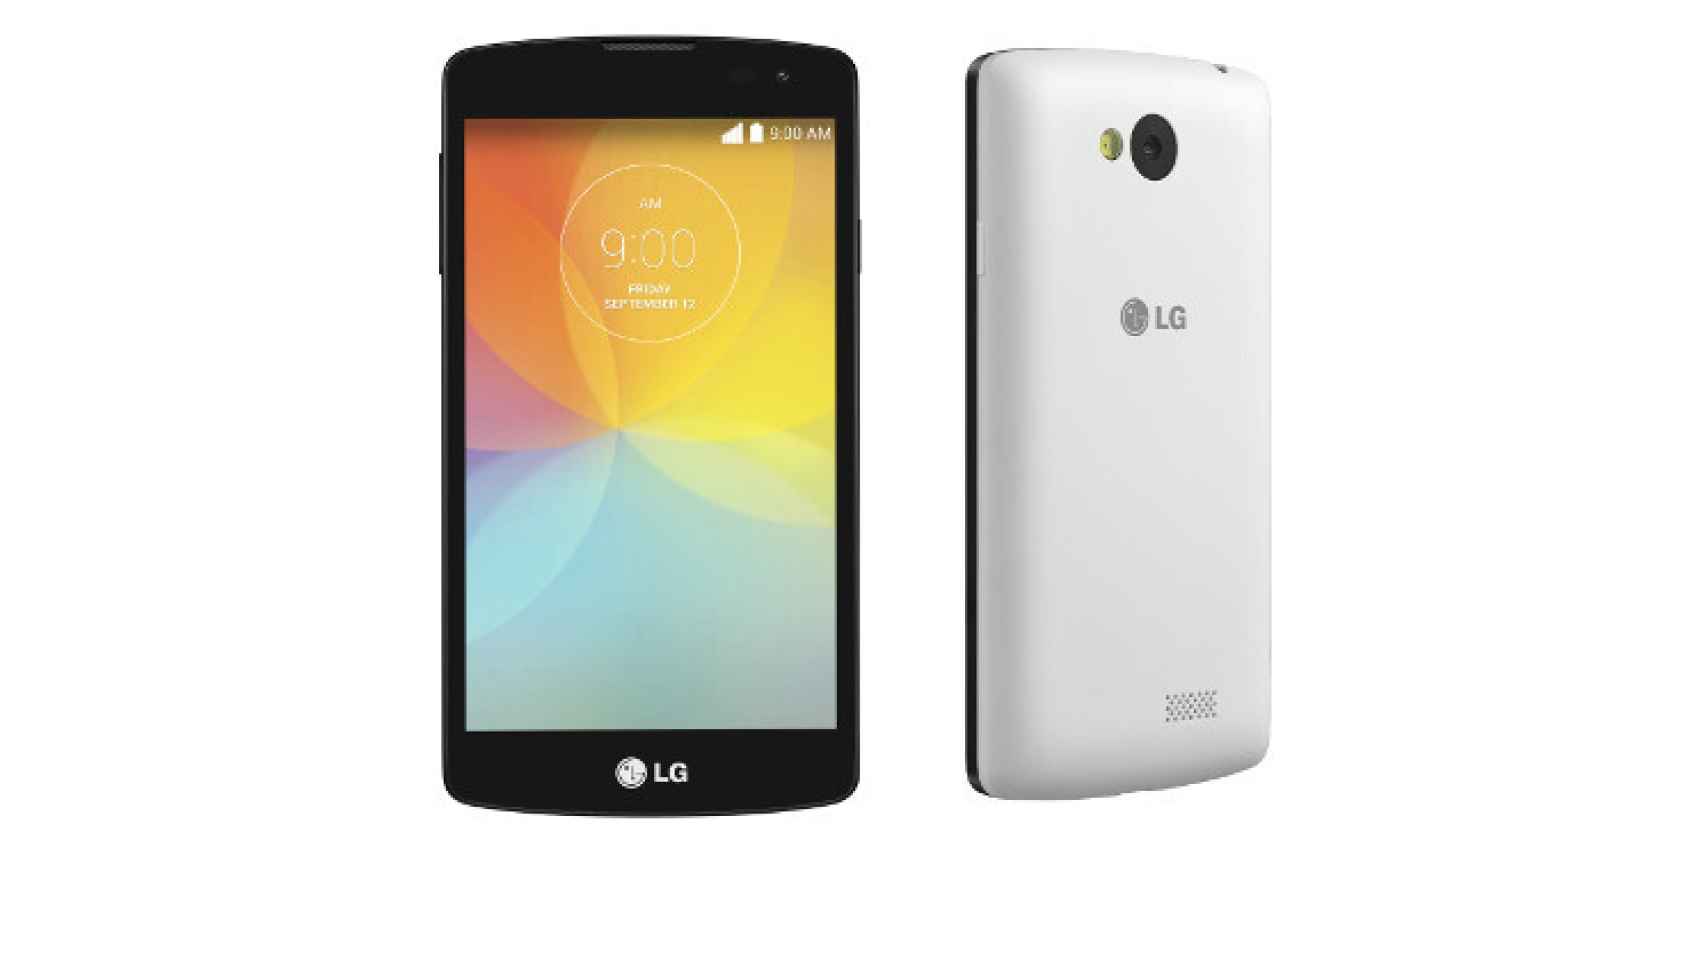 LG F60, smartphone Android para la gama de entrada con LTE